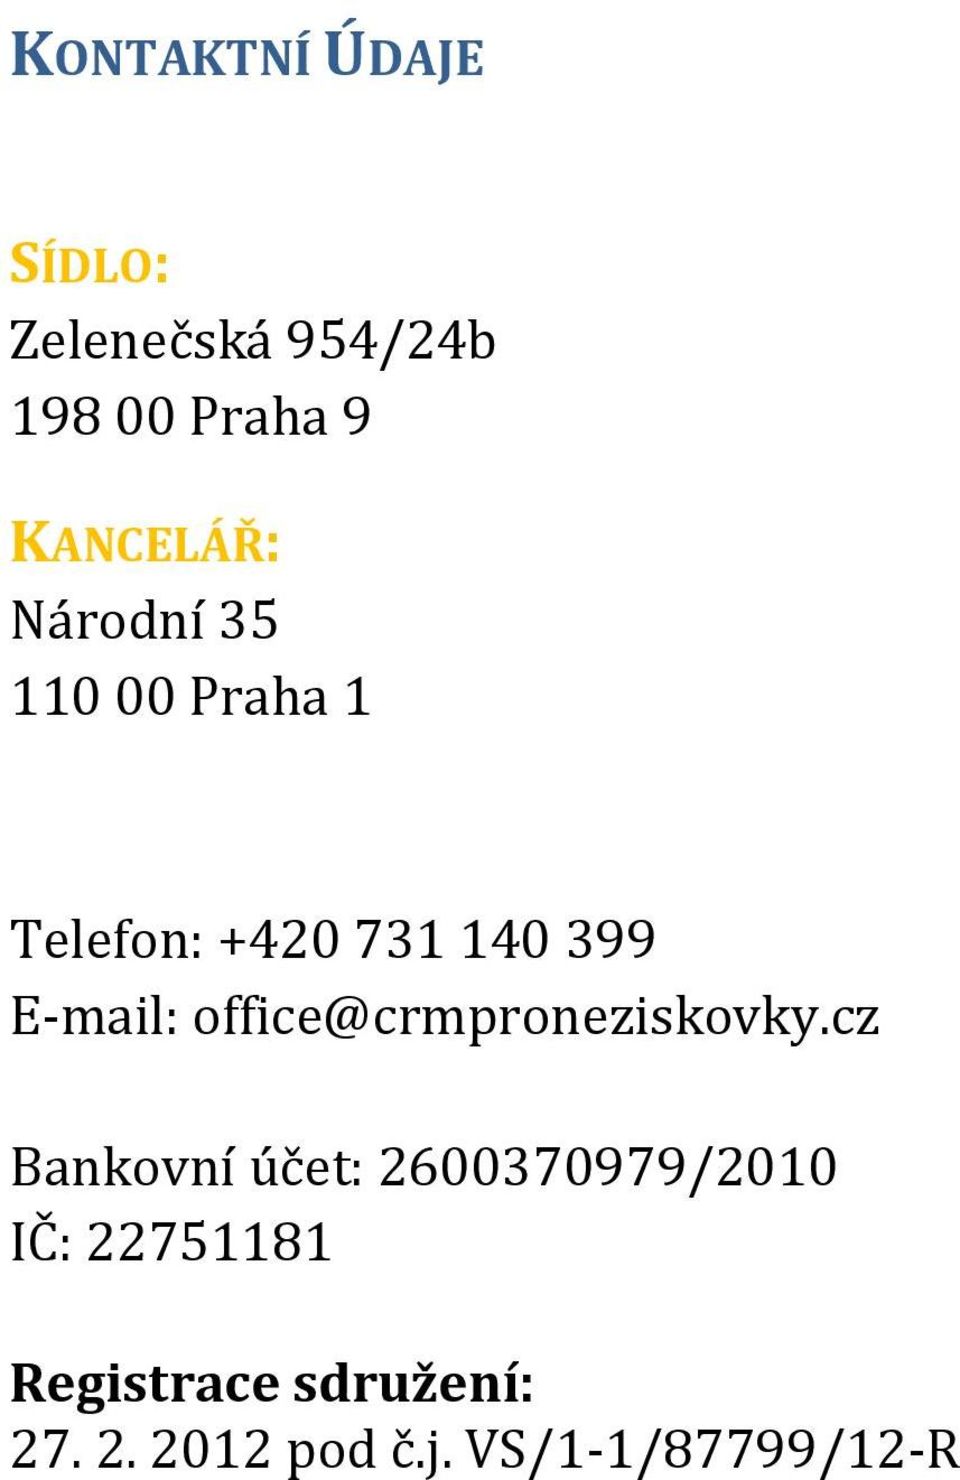 E-mail: office@crmproneziskovky.